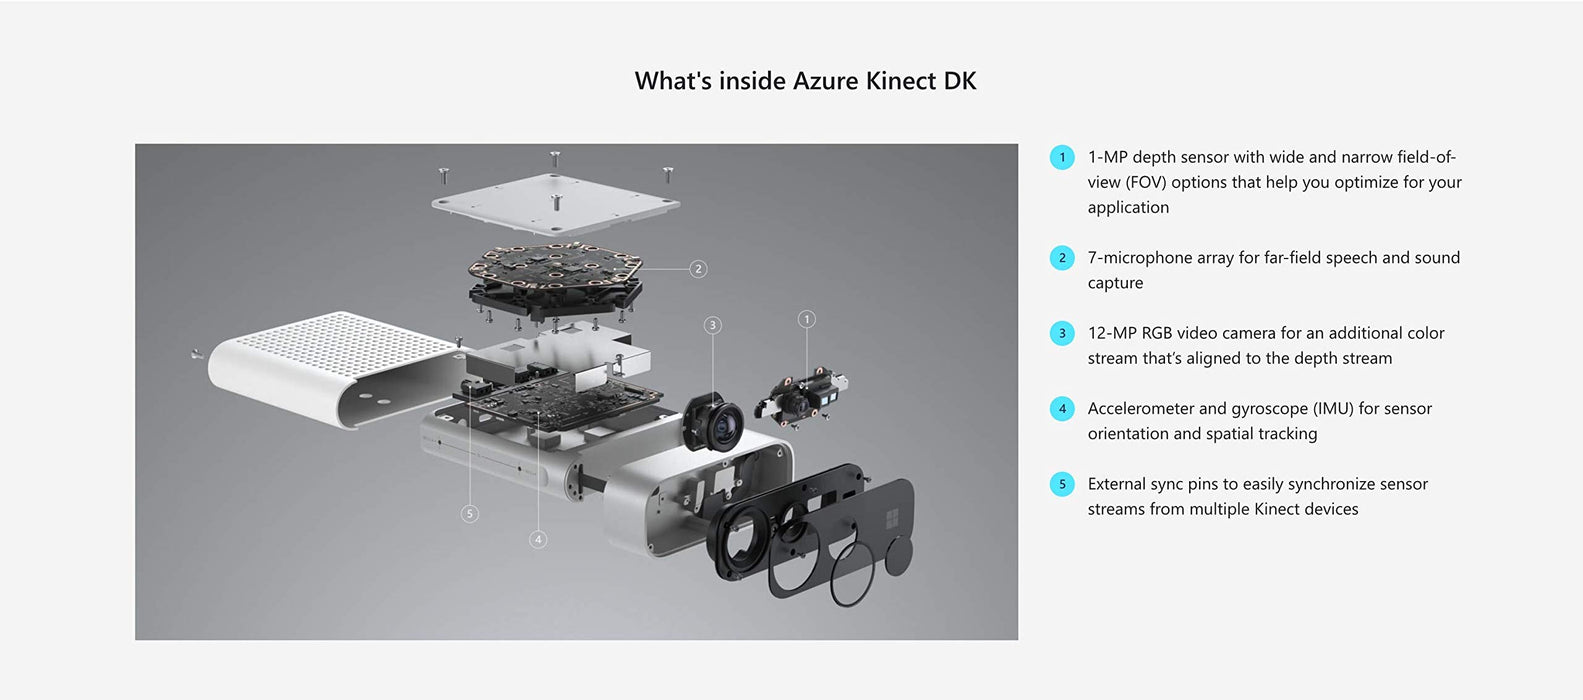 Microsoft Azure Kinect DK